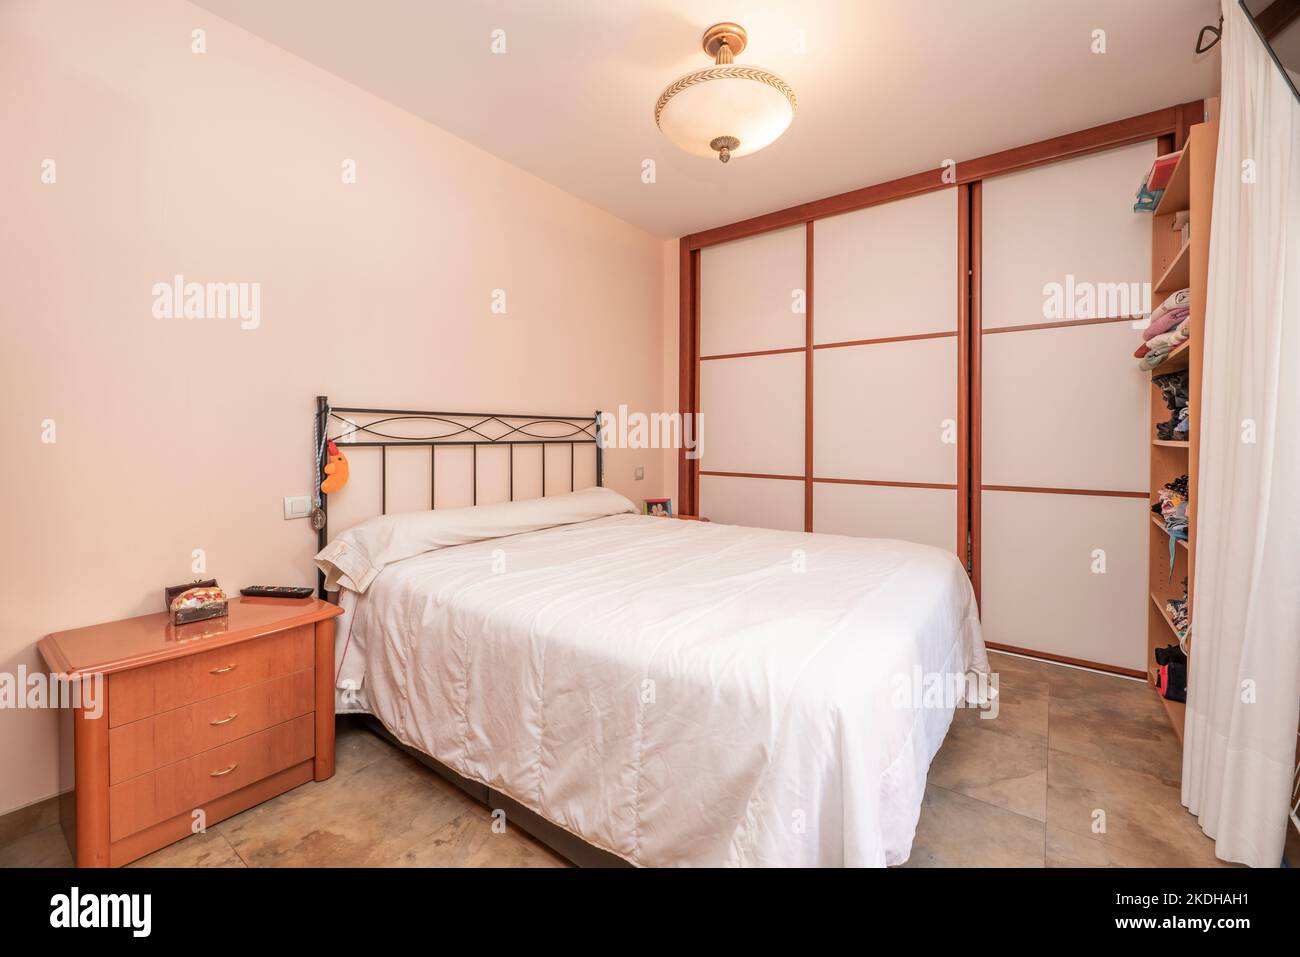 Chambre avec lit double, canapé avec portes coulissantes couvrant un mur et tables de nuit avec tiroirs assortis Banque D'Images